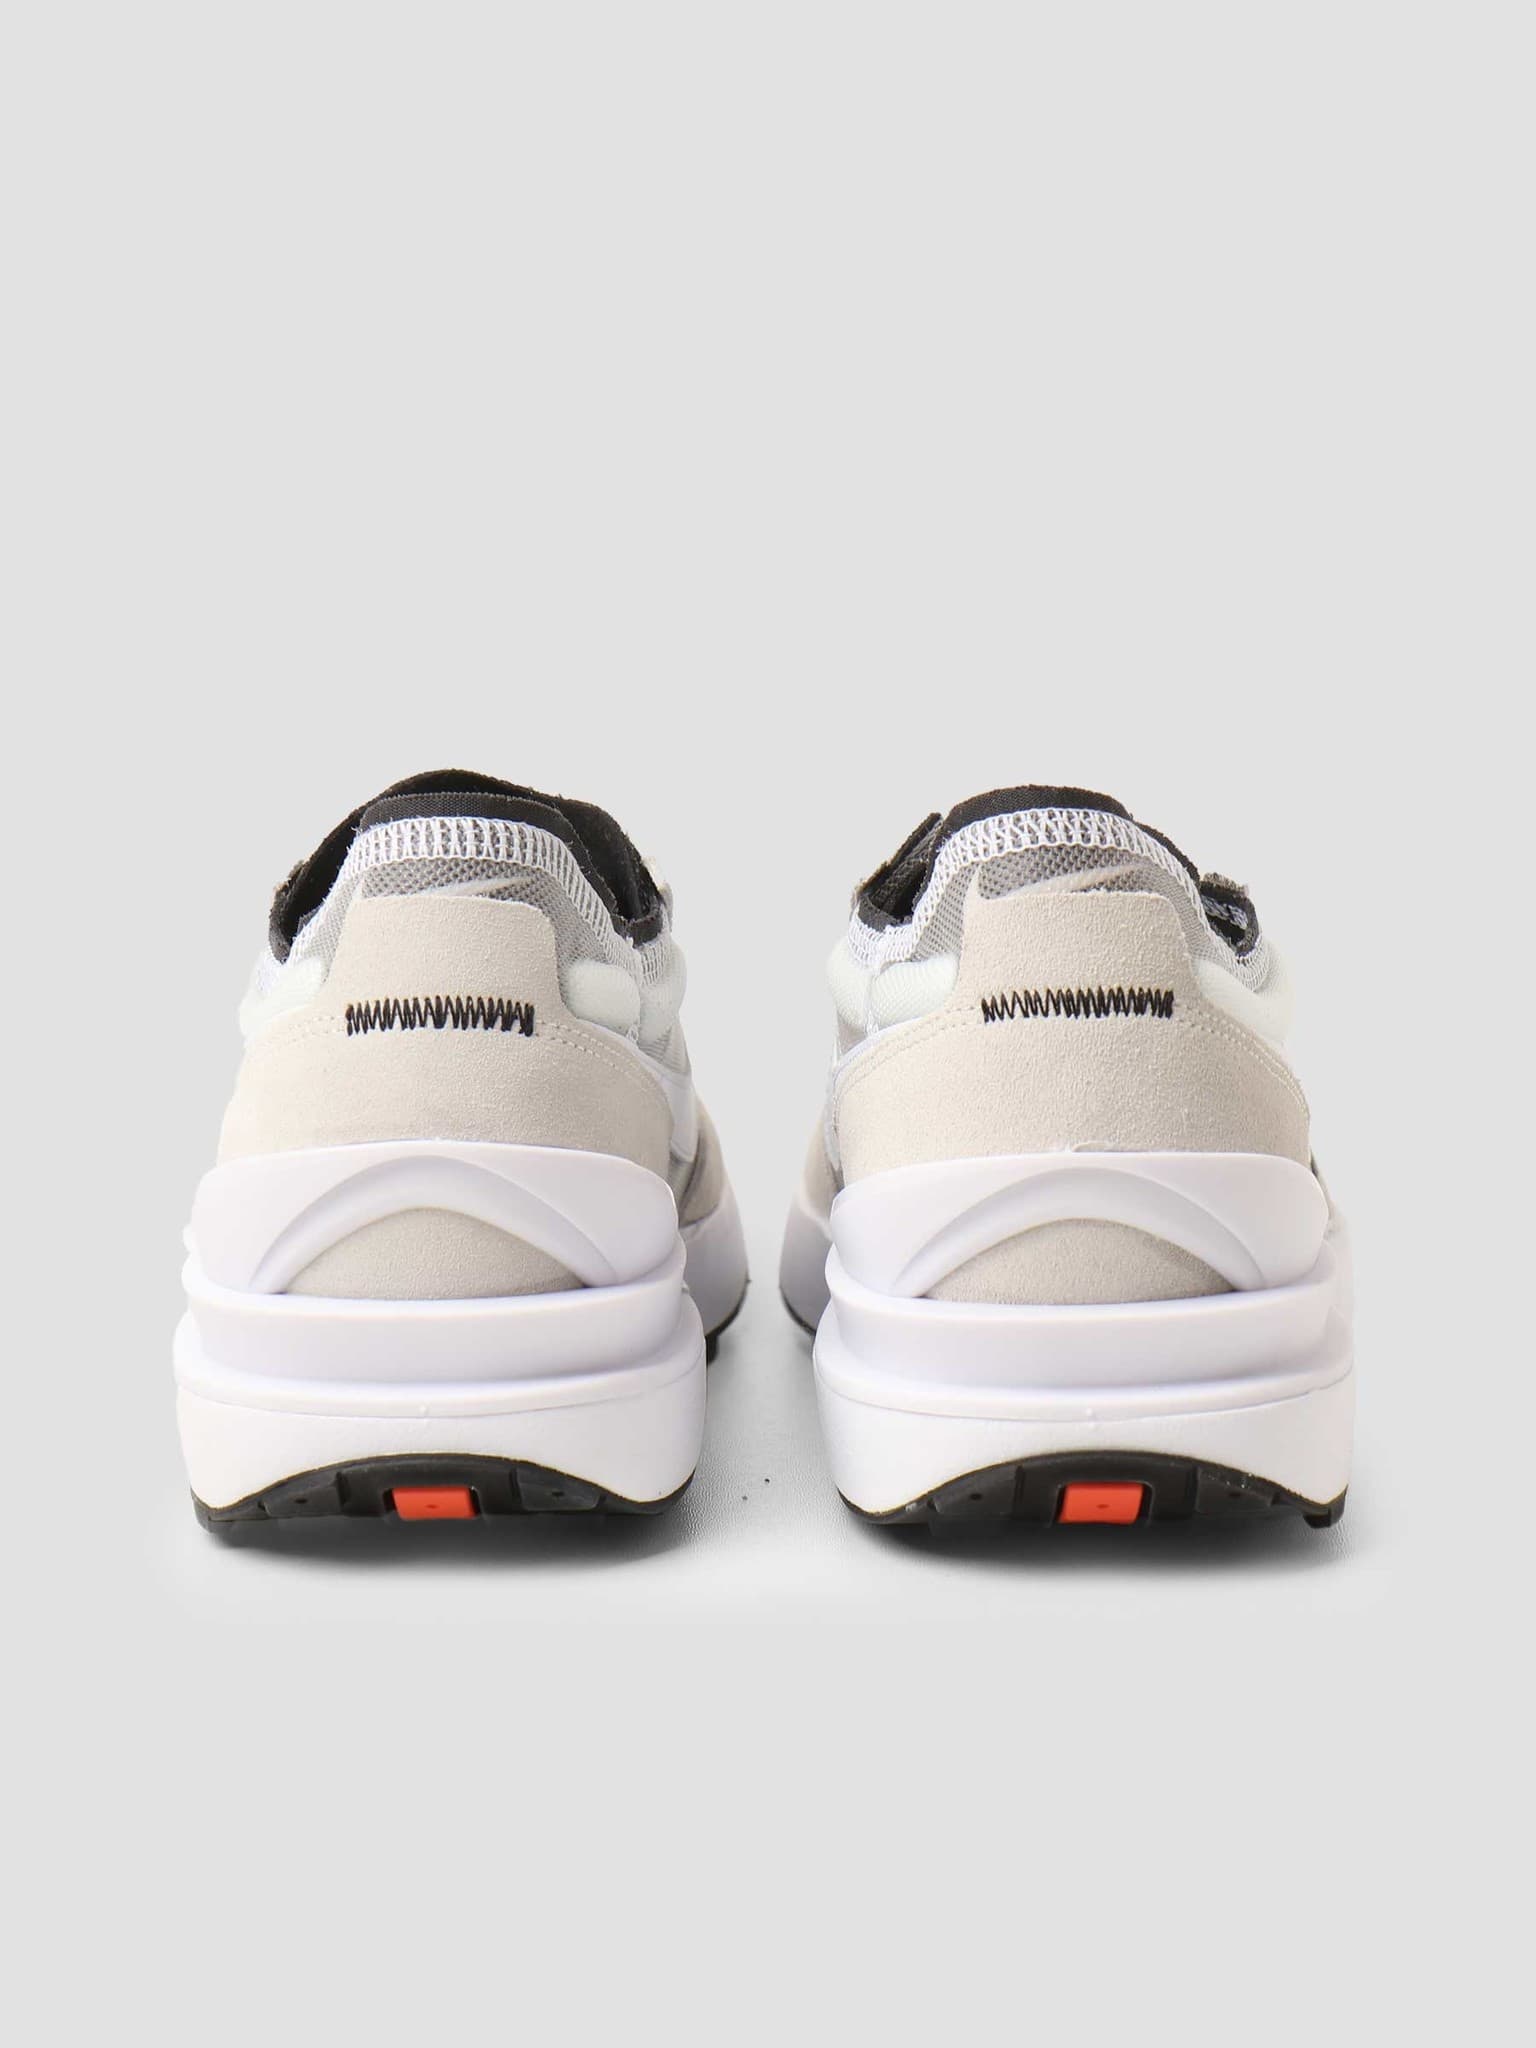 Nike Nike Waffle One Summit White White Black Orange - Freshcotton